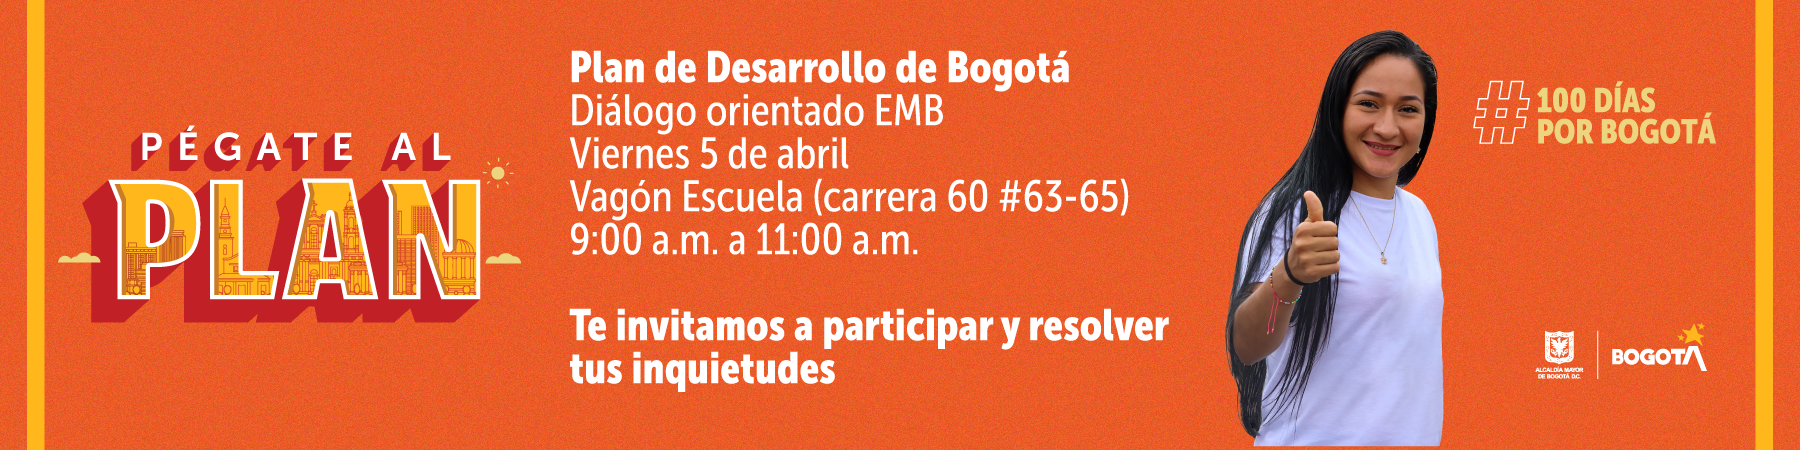 Pégate al plan. Plan de Desarrollo de Bogotá. Diálogo orientado EMB. Viernes 5 de abril. Vagón Escuela (carrera 60 # 63-65) 9:00 a.m. a 11:00 a.m. Te invitamos a participar y resolver tus inquietudes